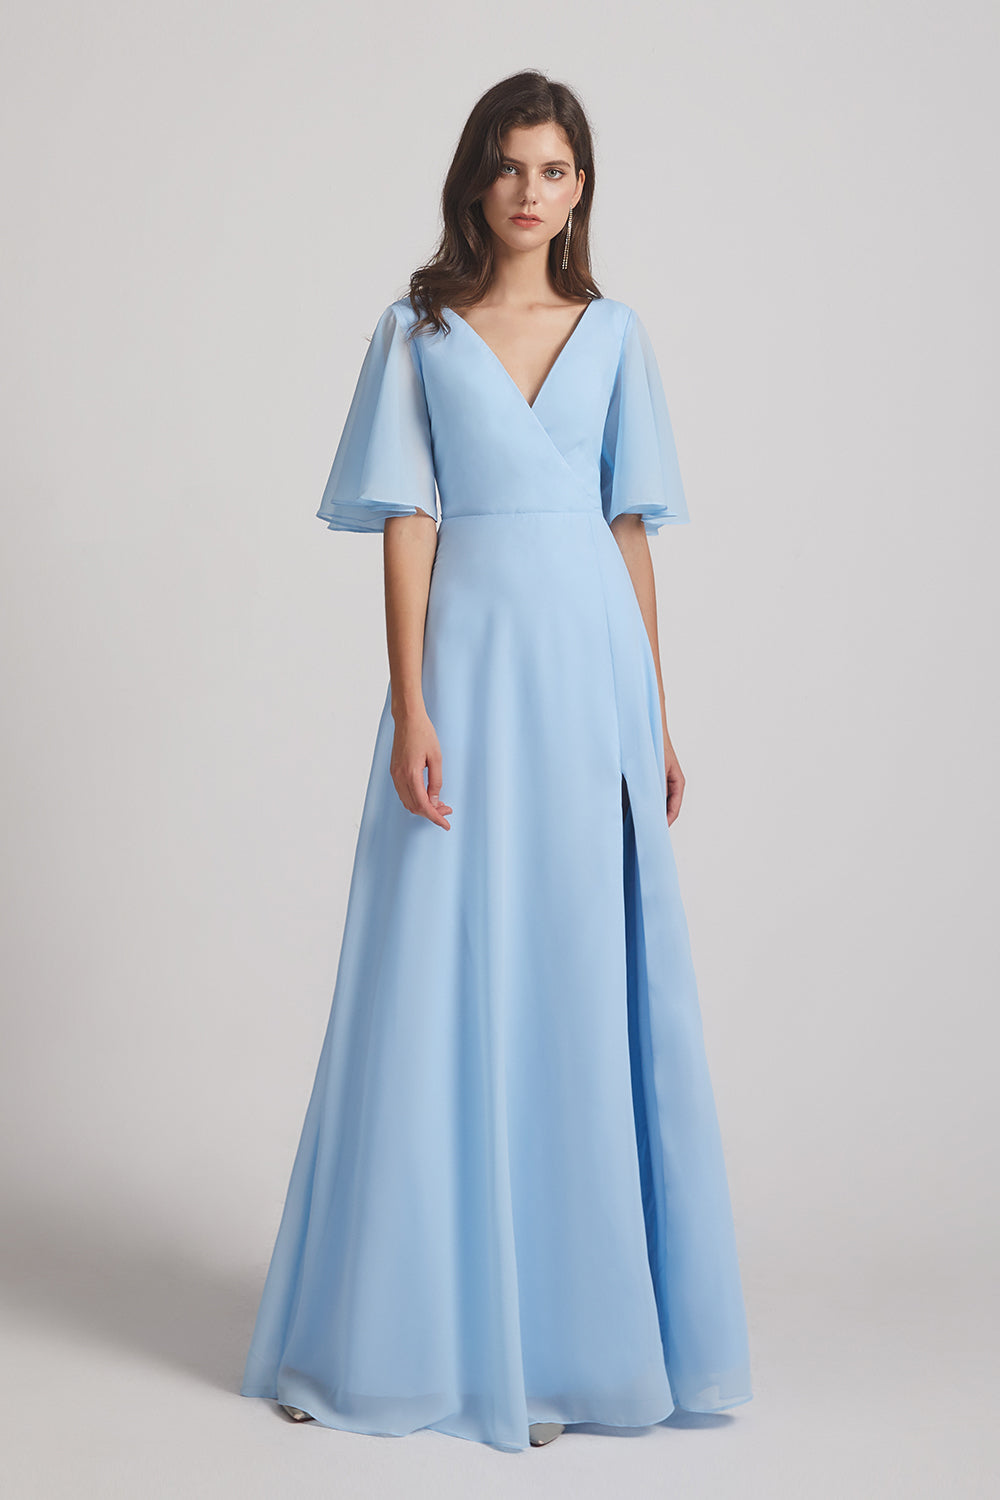 v-neck sky blue chiffon long bridesmaids dresses